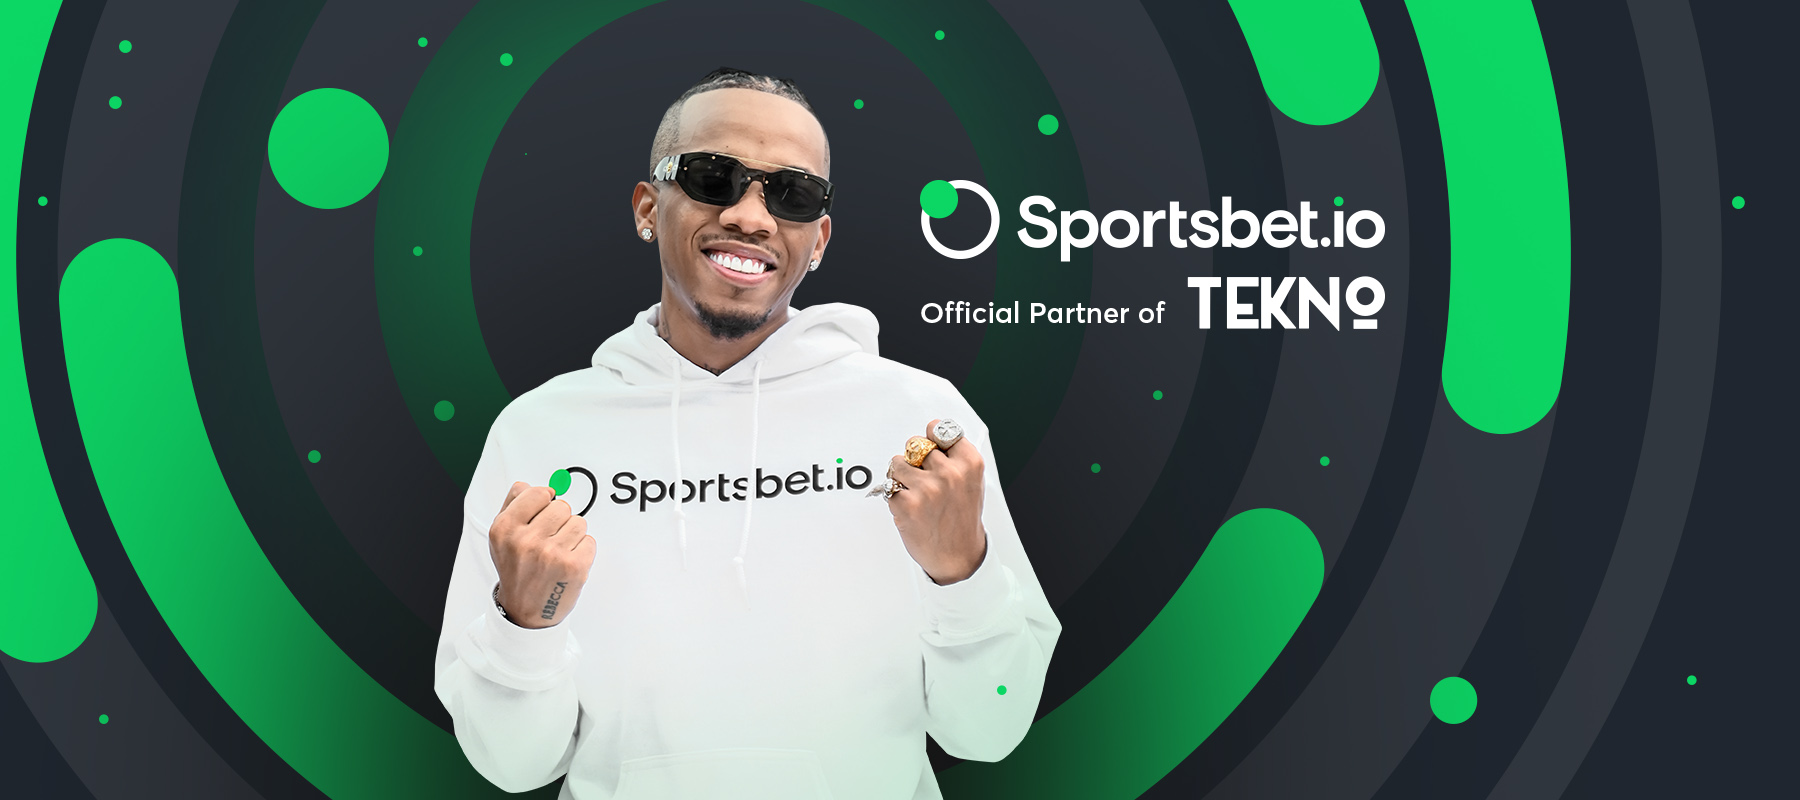 Sienta el ritmo con el nuevo embajador de Sportsbet, Tekno Miles